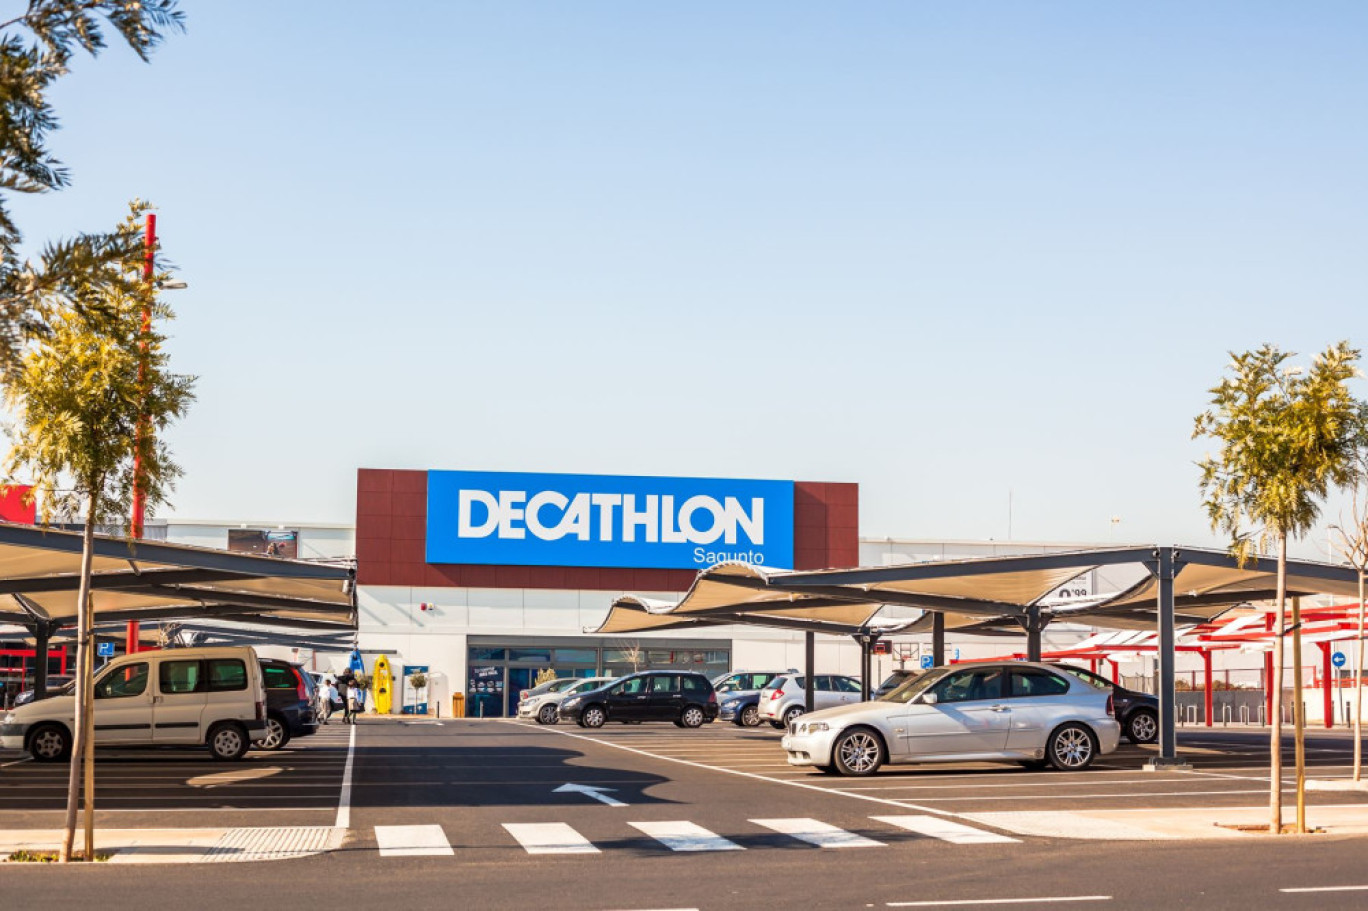 Decathlon vise une réduction de 20% de ses émissions de CO2 par rapport à 2021. © Dvoevnore